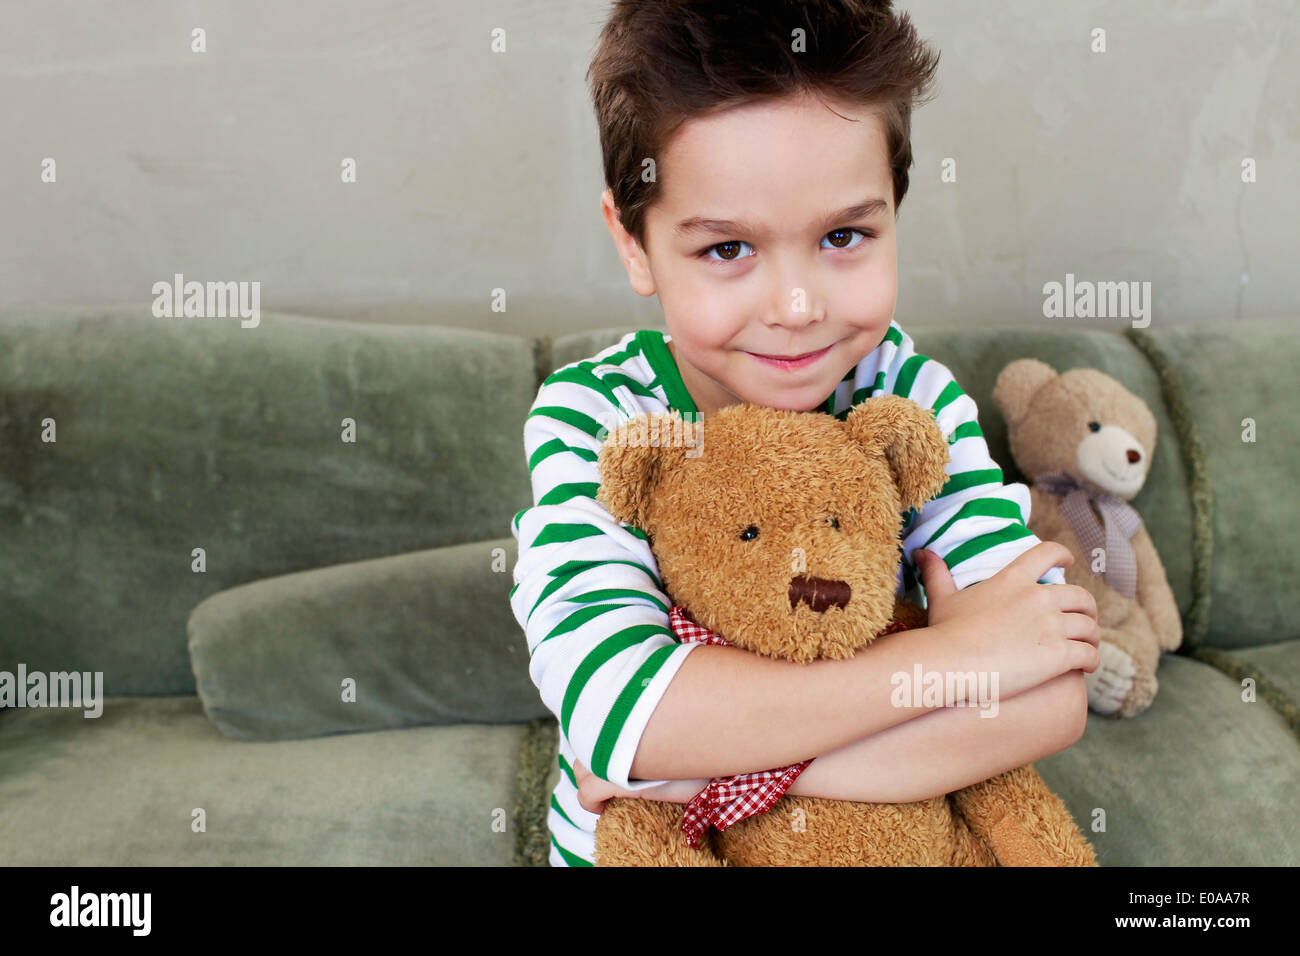 Portrait de jeune garçon sur canapé hugging teddy Banque D'Images